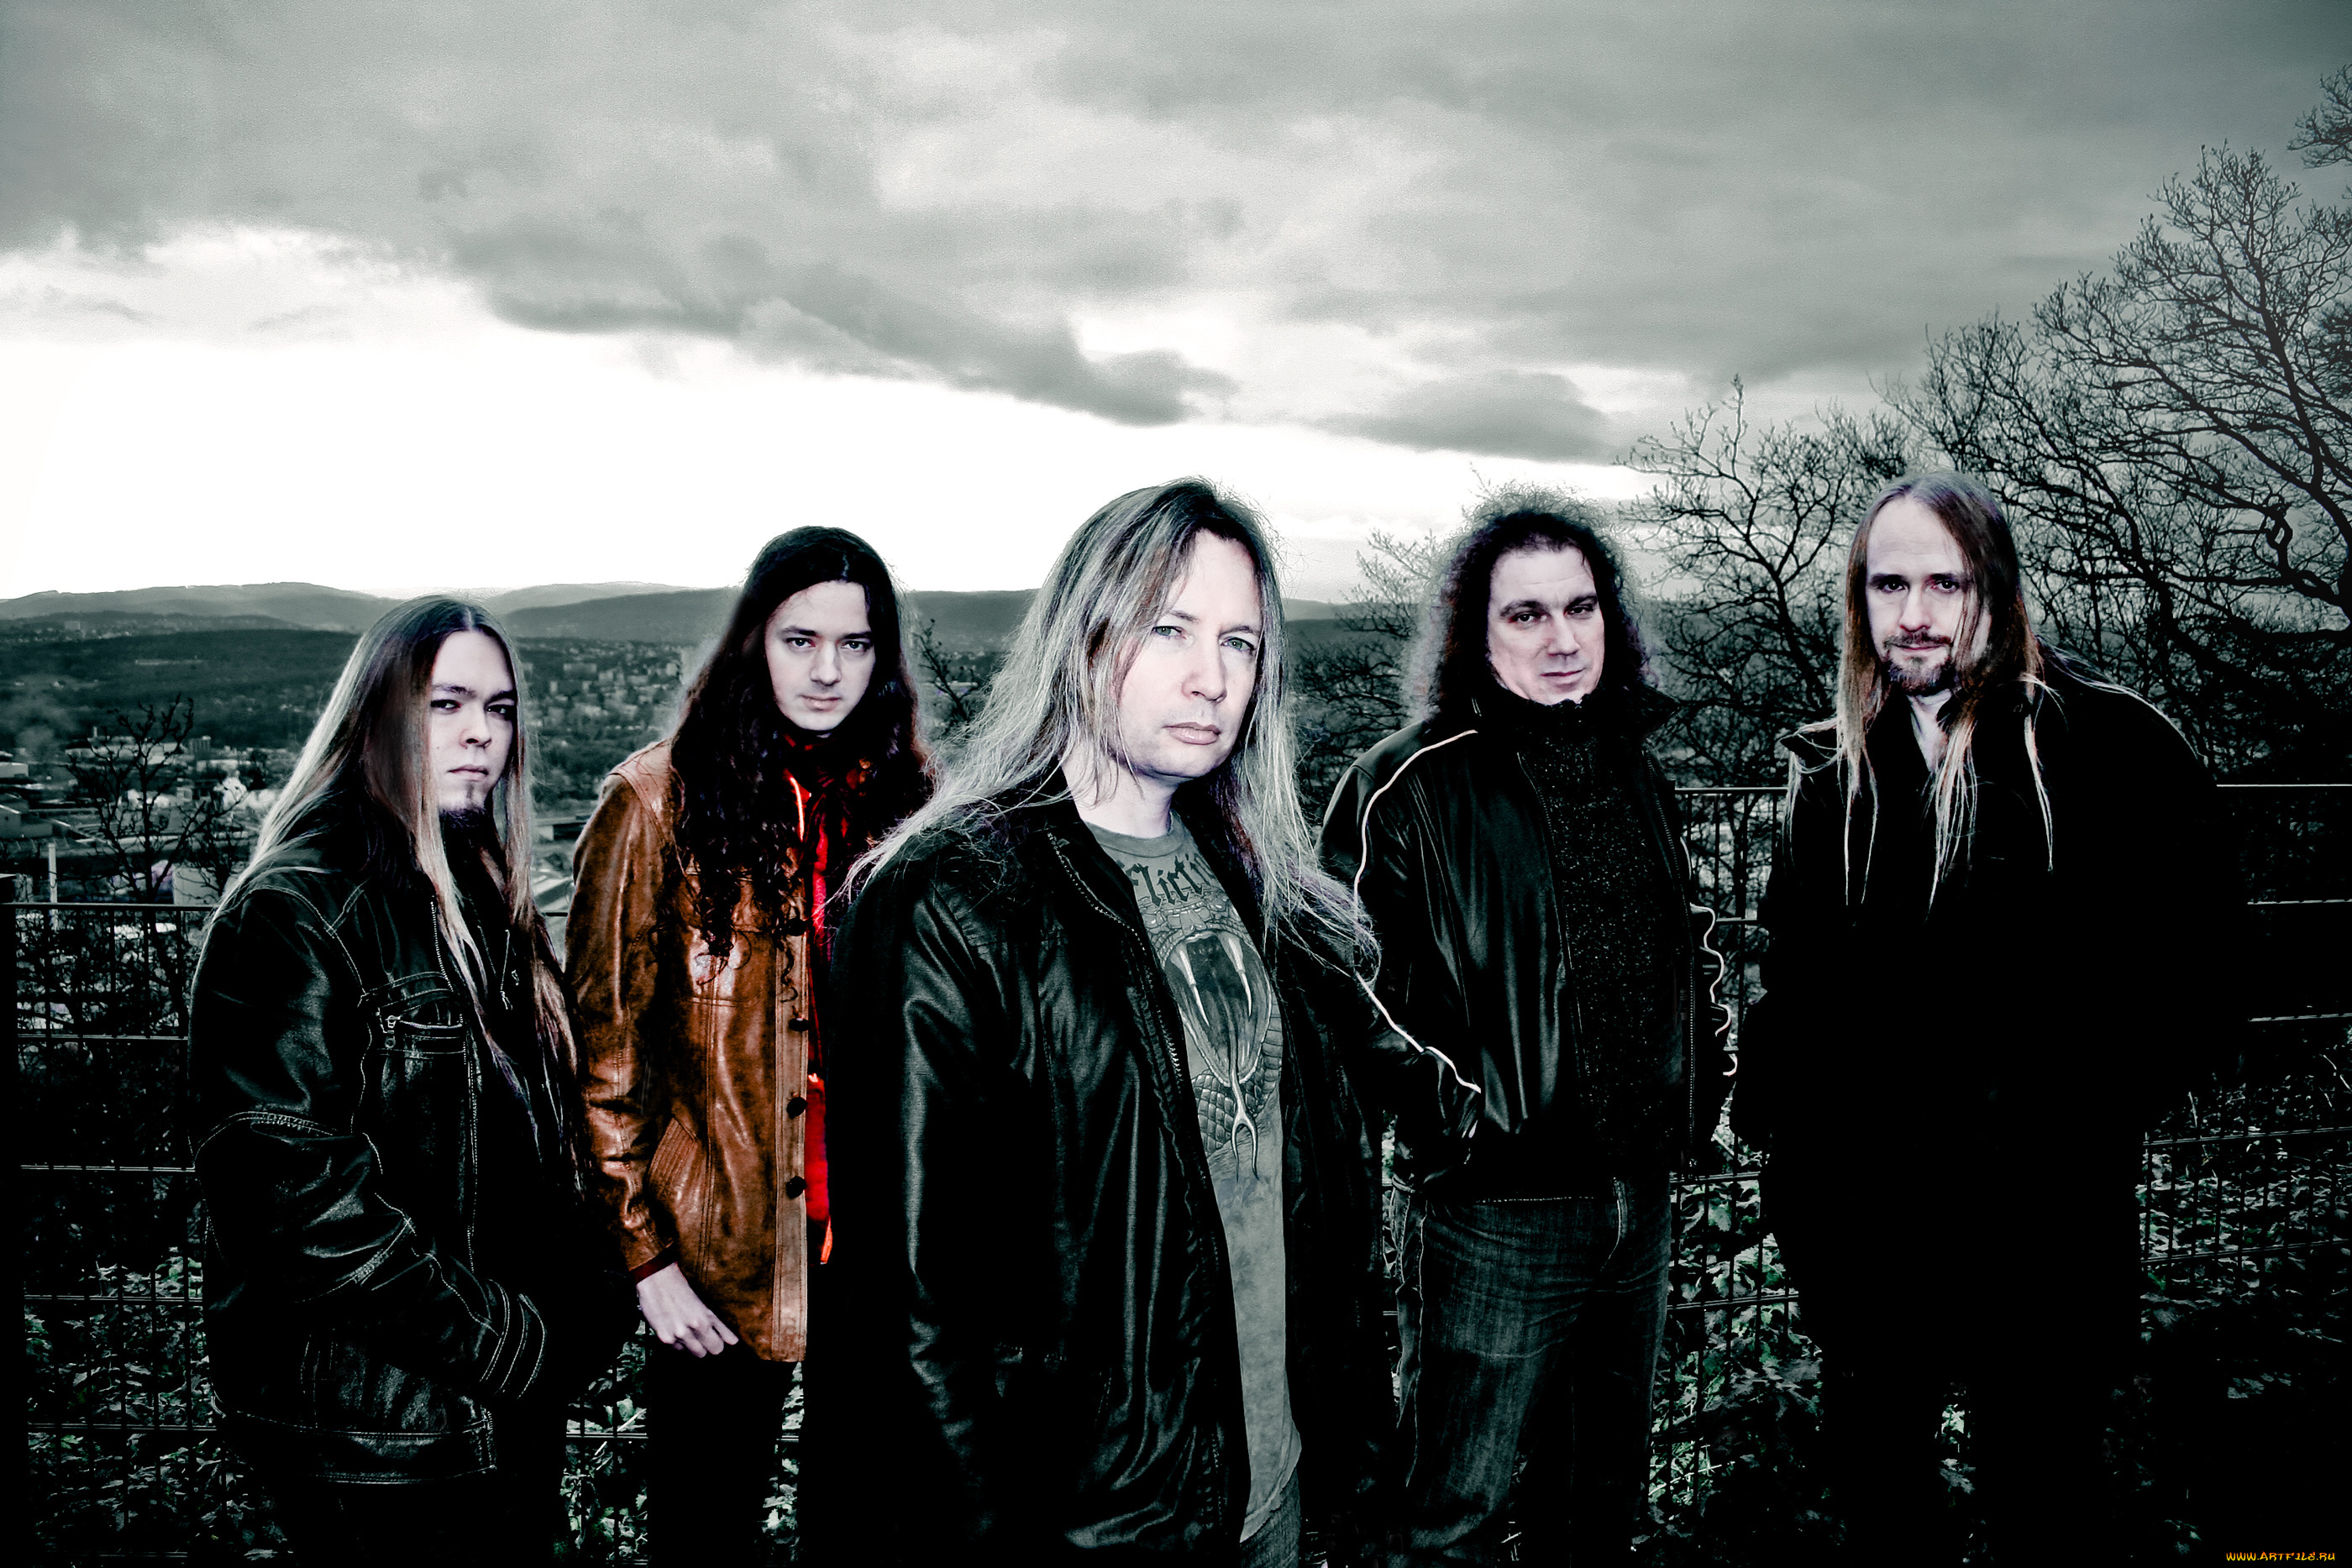 stratovarius, музыка, пауэр-метал, неоклассический, метал, прогрессивный, финляндия